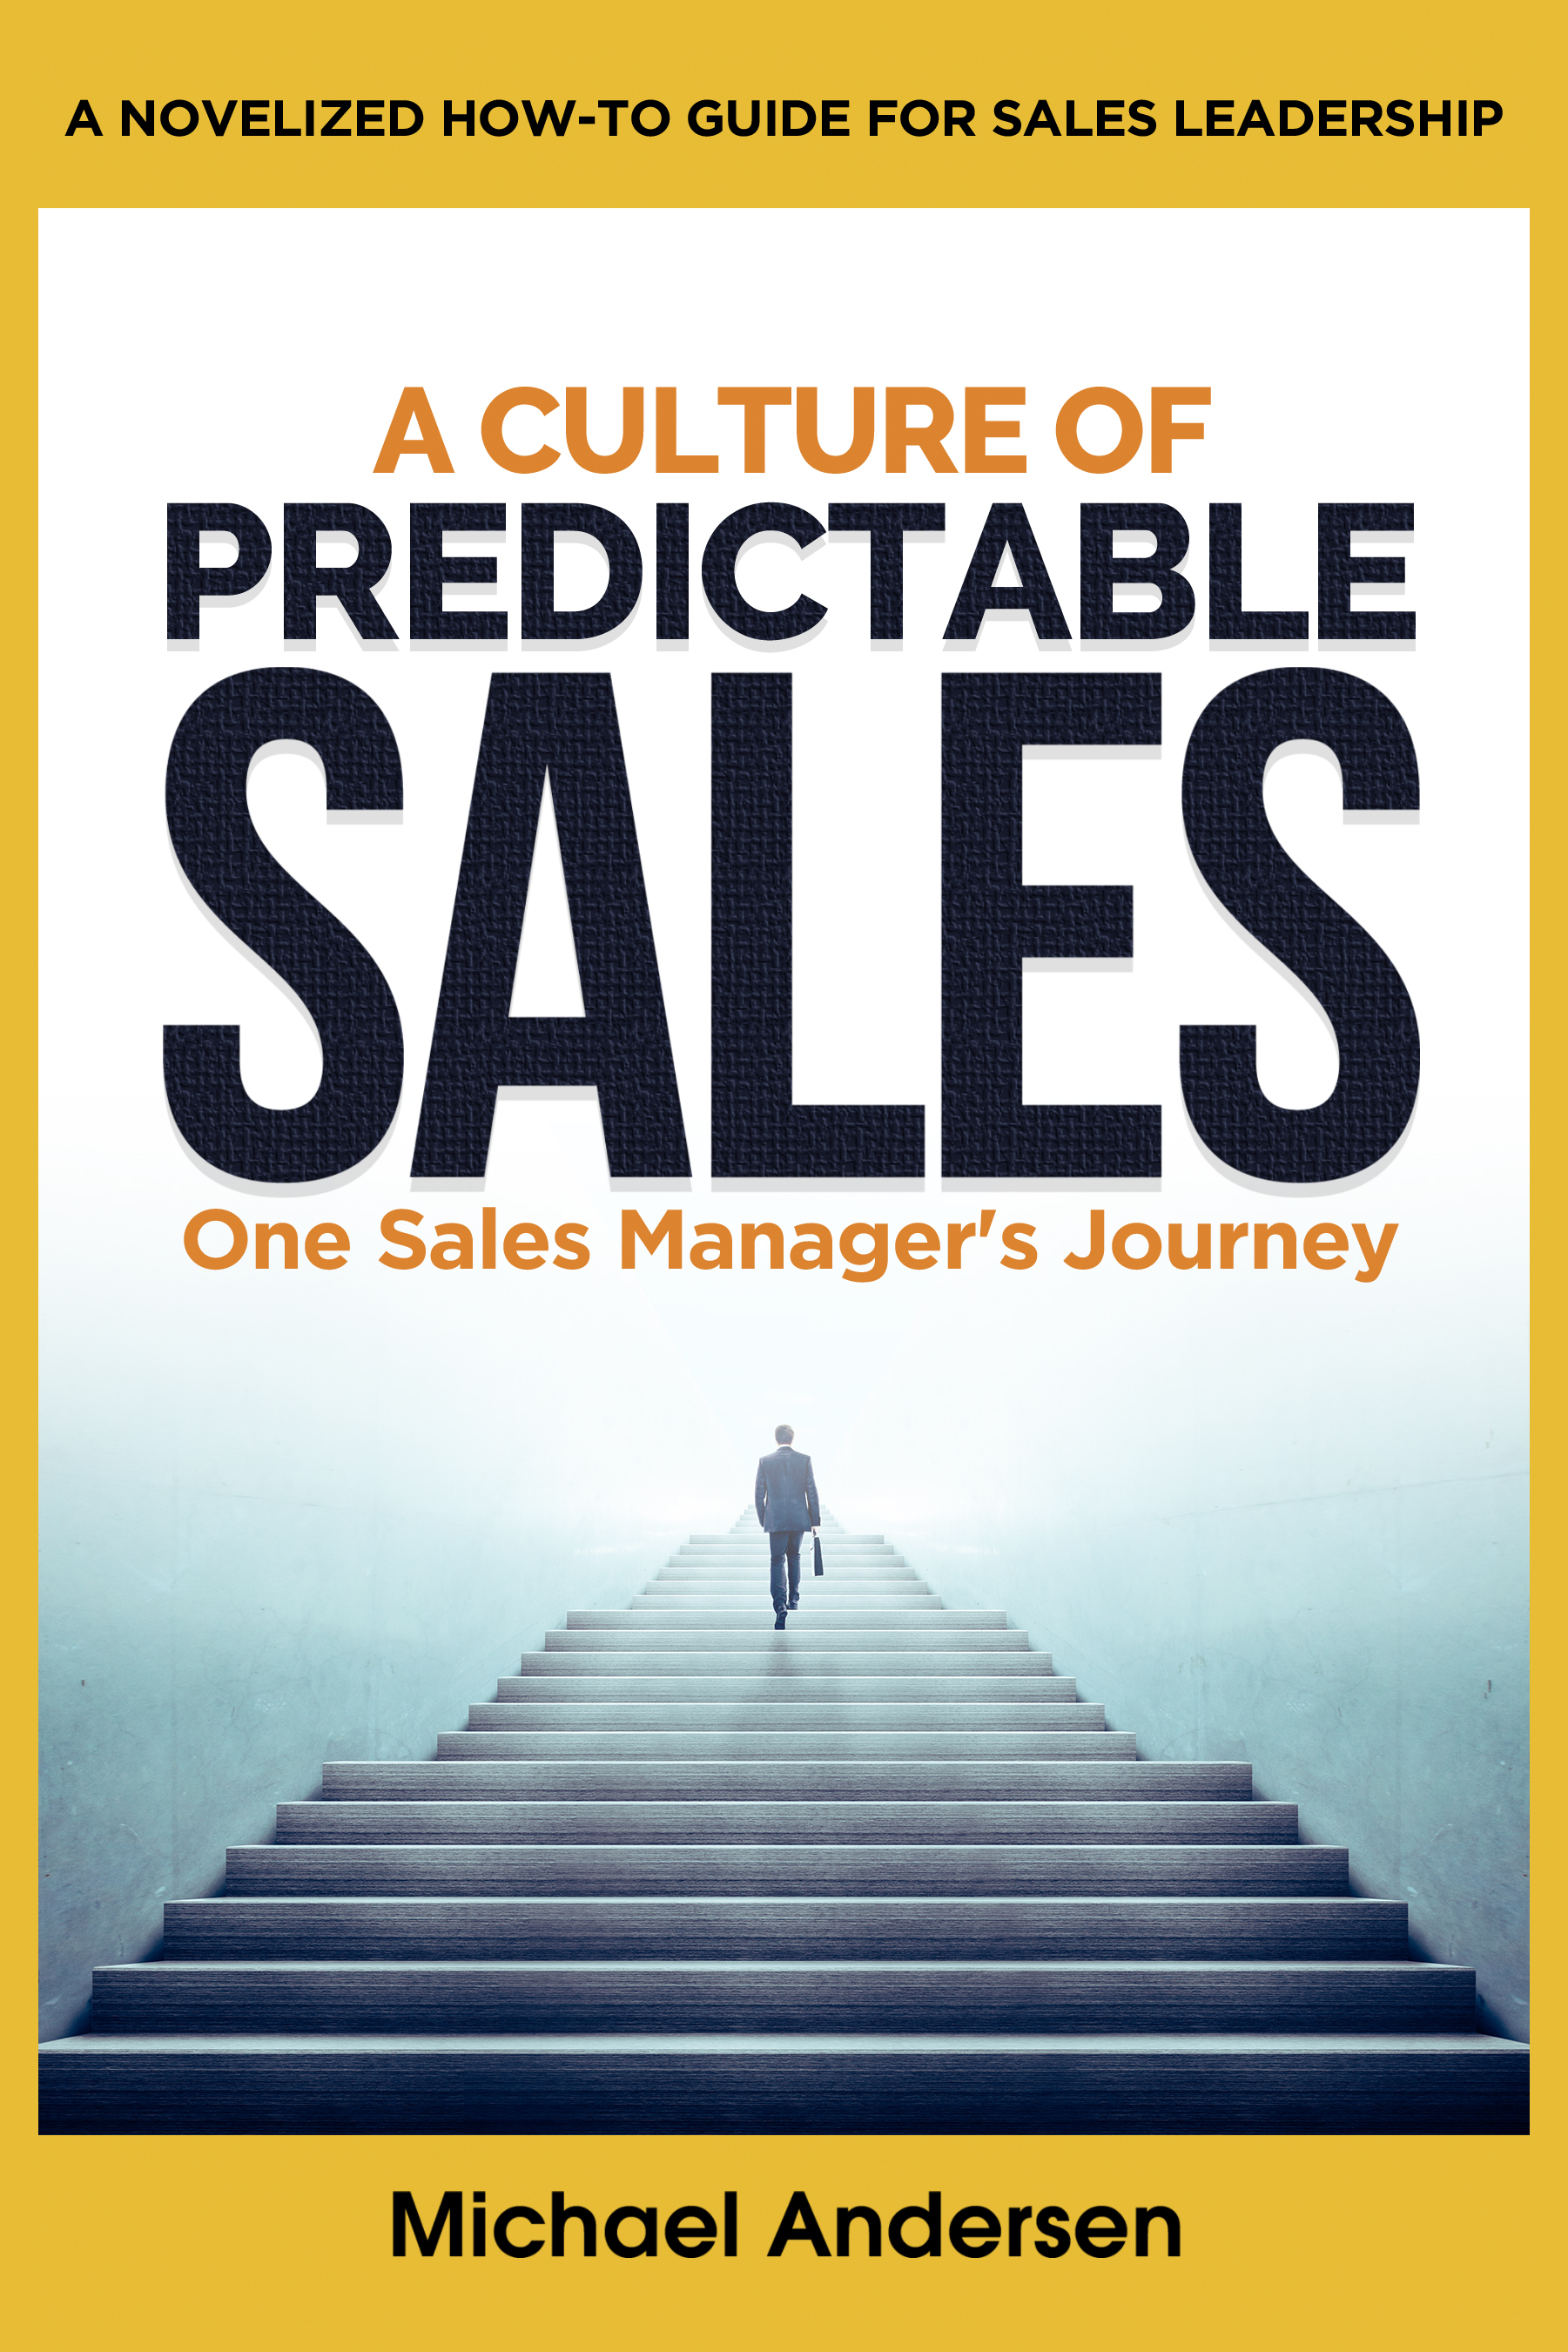 Top Sales Management Guru Reveals Secret Strategies in FirstofItsKind 'Business Novel' for